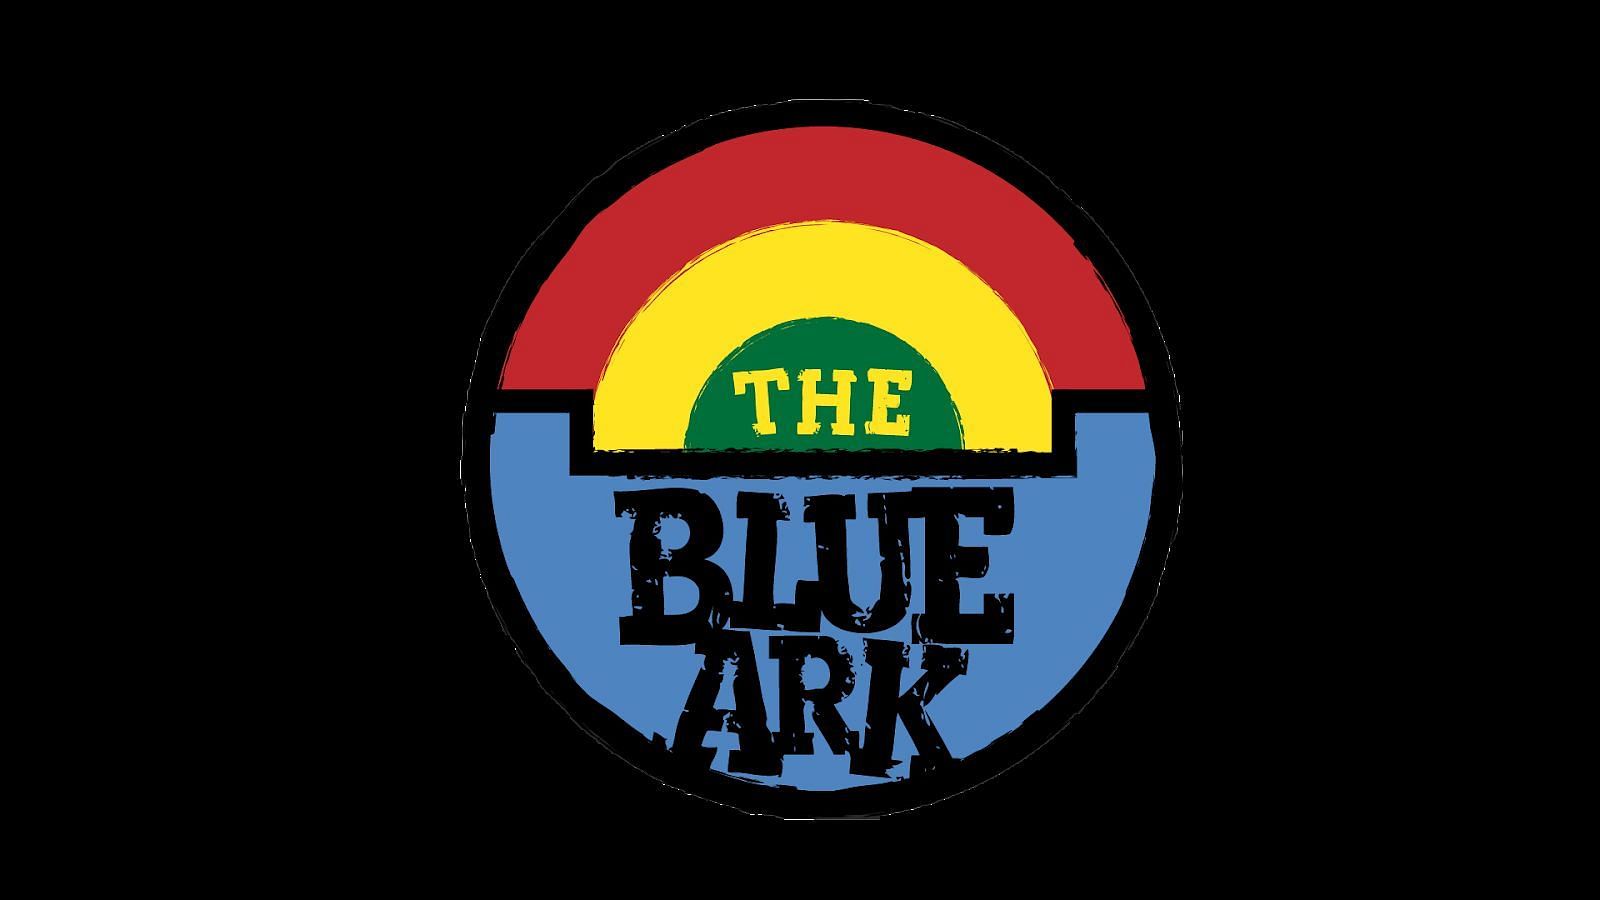 Gta 5 blue ark во фото 2